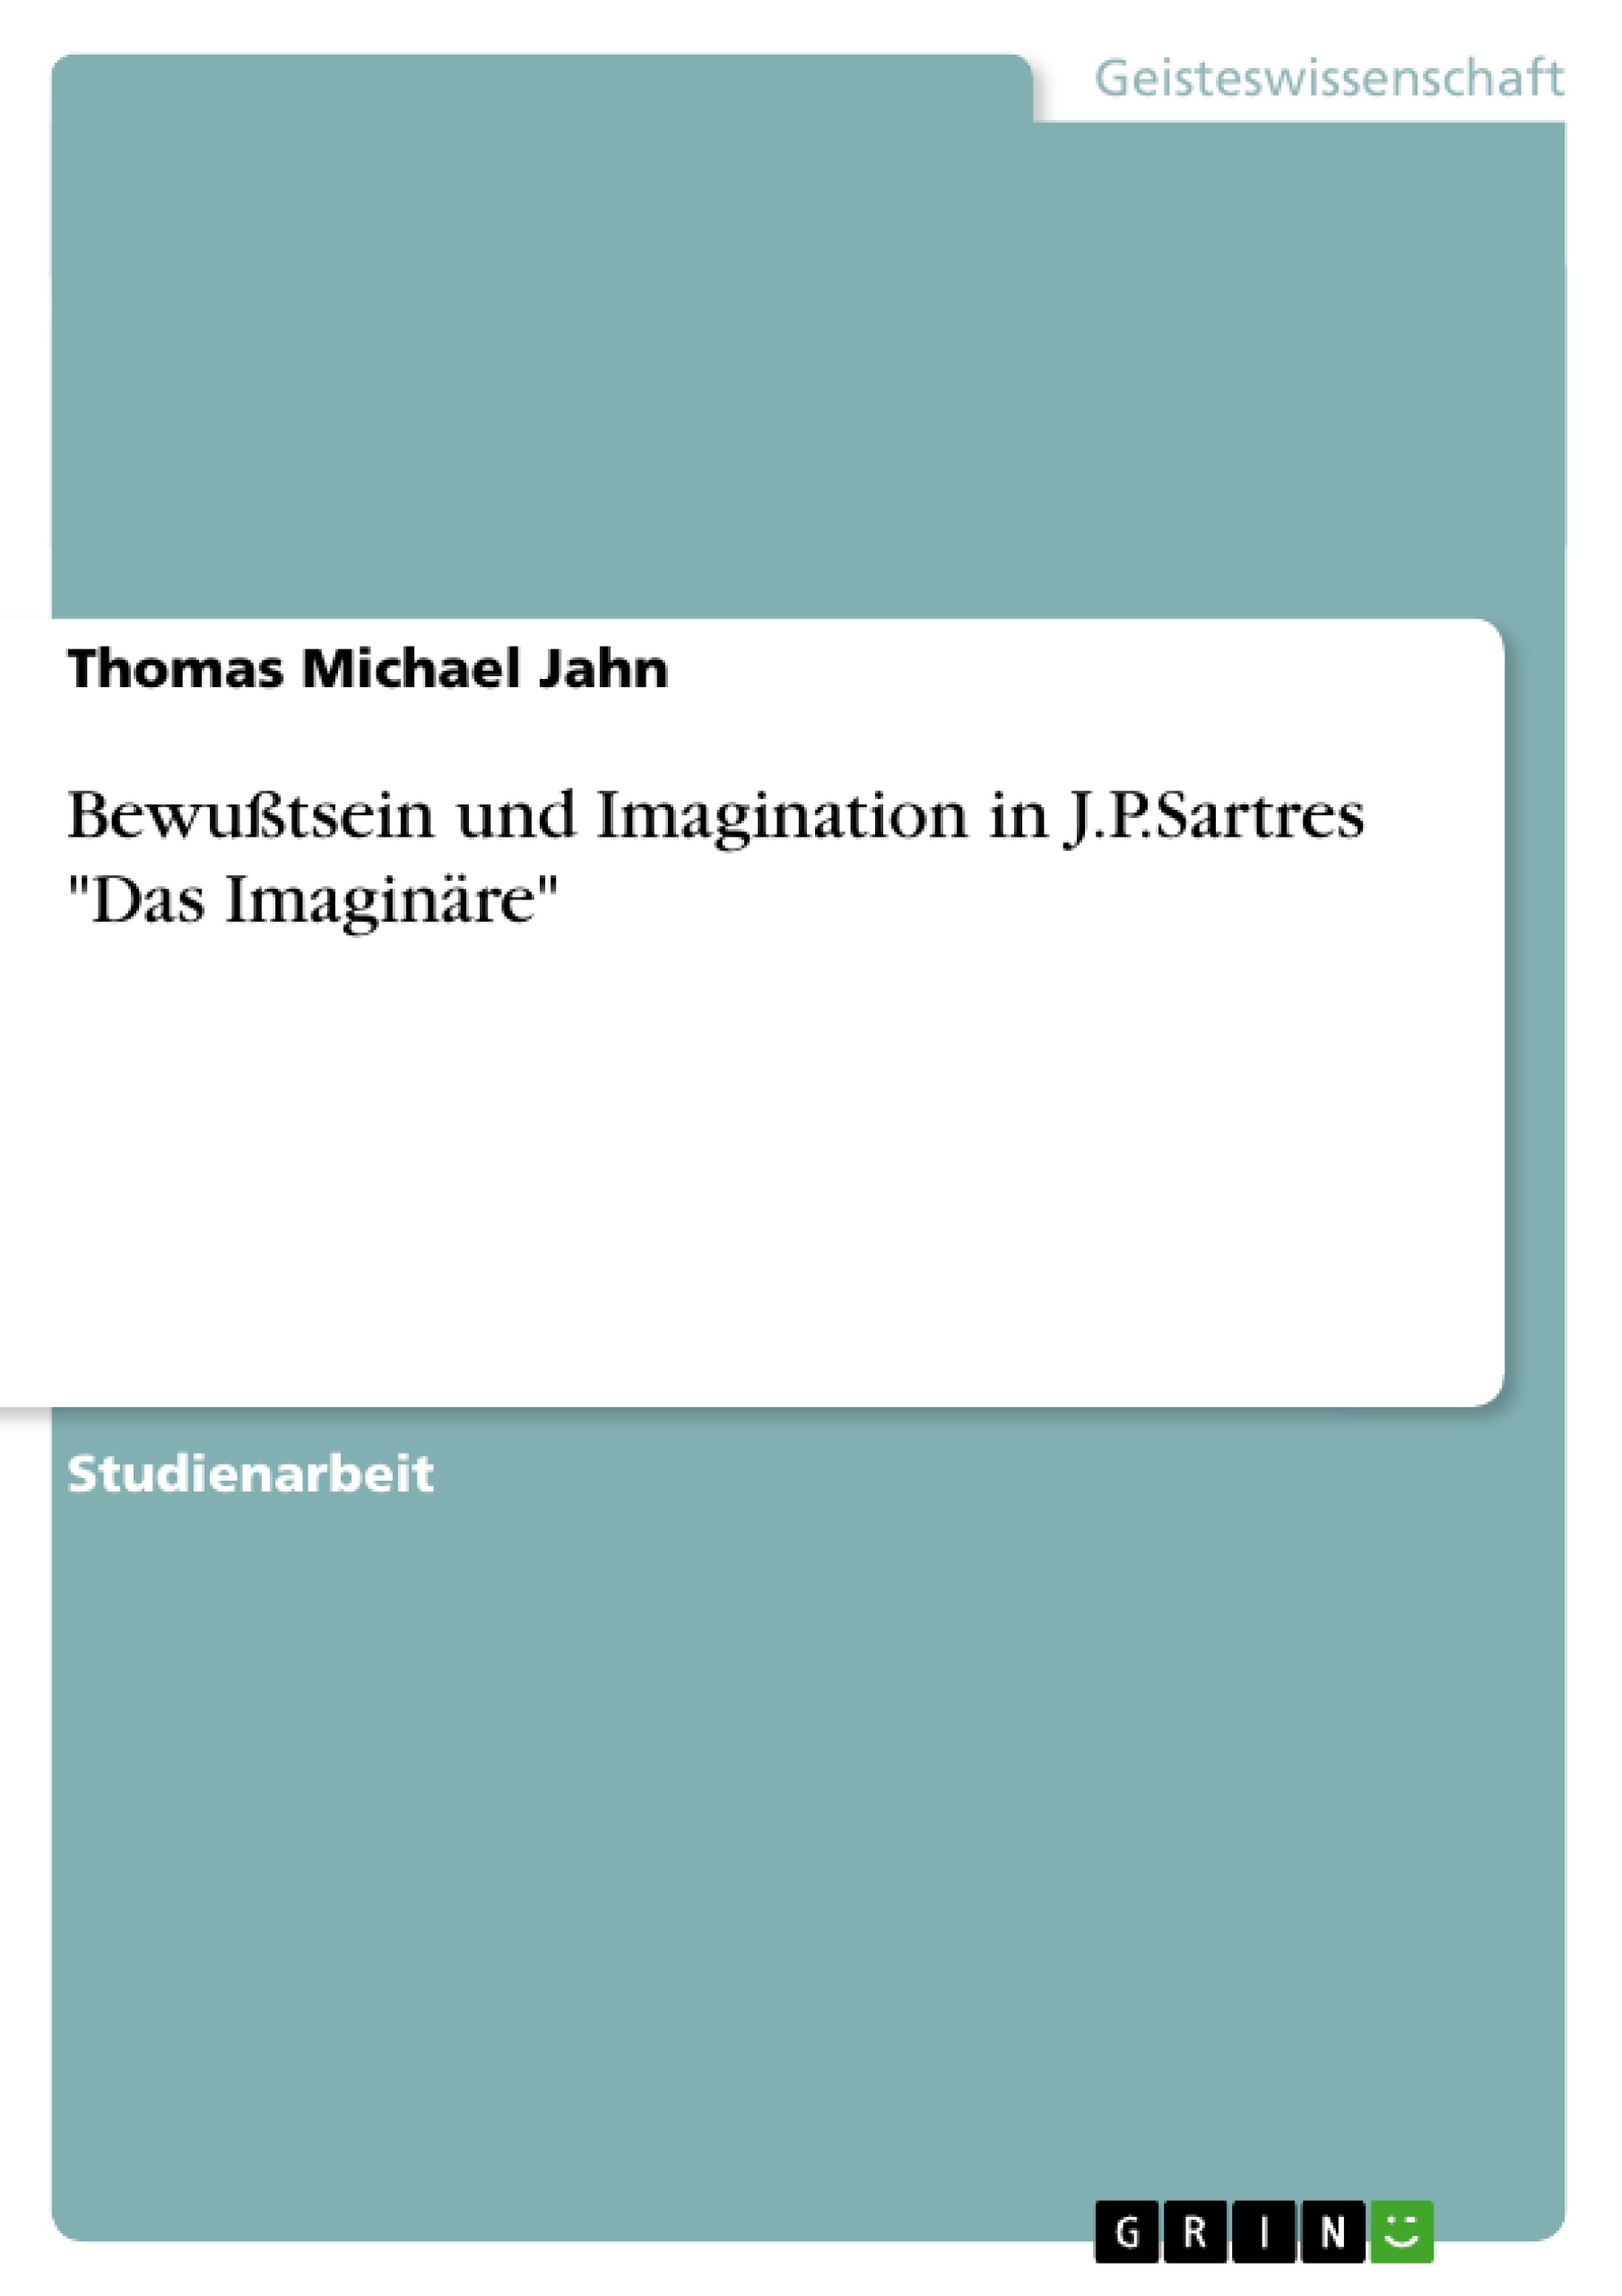 Title: Bewußtsein und Imagination in J.P.Sartres "Das Imaginäre"